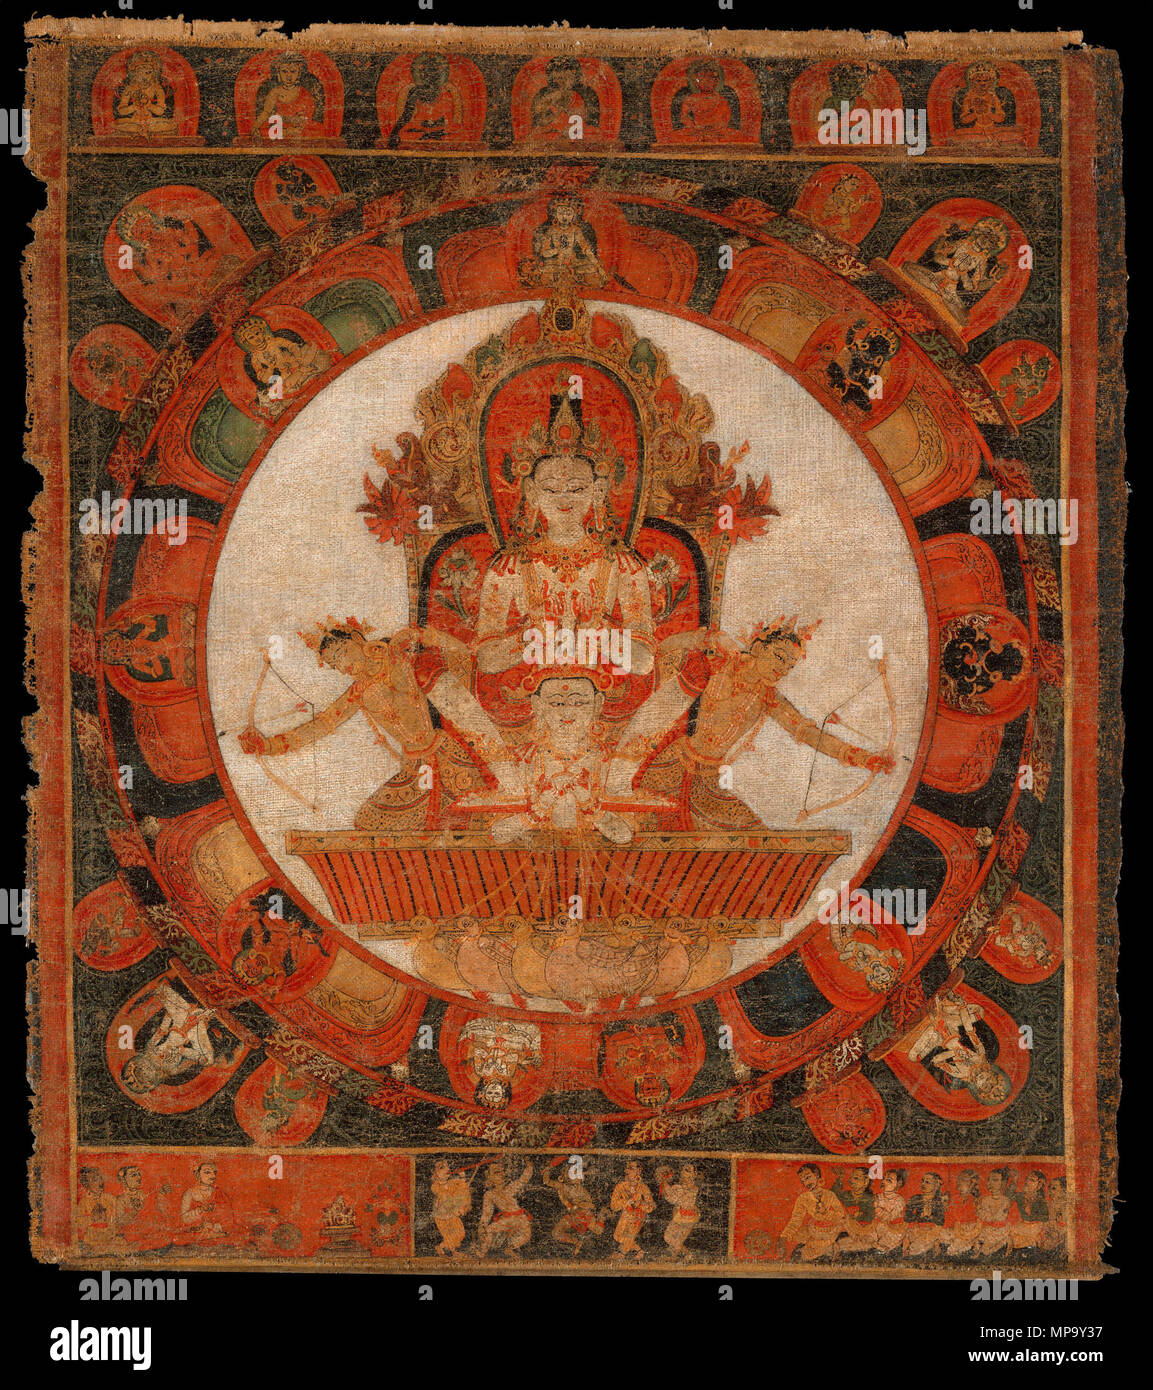 .  English: Mandala of Chandra, God of the Moon. Nepal (Kathmandu Valley), early Malla period. Distemper on cloth, 16 x 14 1/4 in. (40.6 x 36.2 cm). Français : Mandala de Chandra, dieu de la lune, vallée de Katmandou, Népal. Détrempe sur tissu, 40,6 x 36,2 cm. Fin du 14e ou début du 15e siècle (début de la période Malla). . late 14th–early 15th century. Unknown 848 Mandala of Chandra, God of the Moon Stock Photo